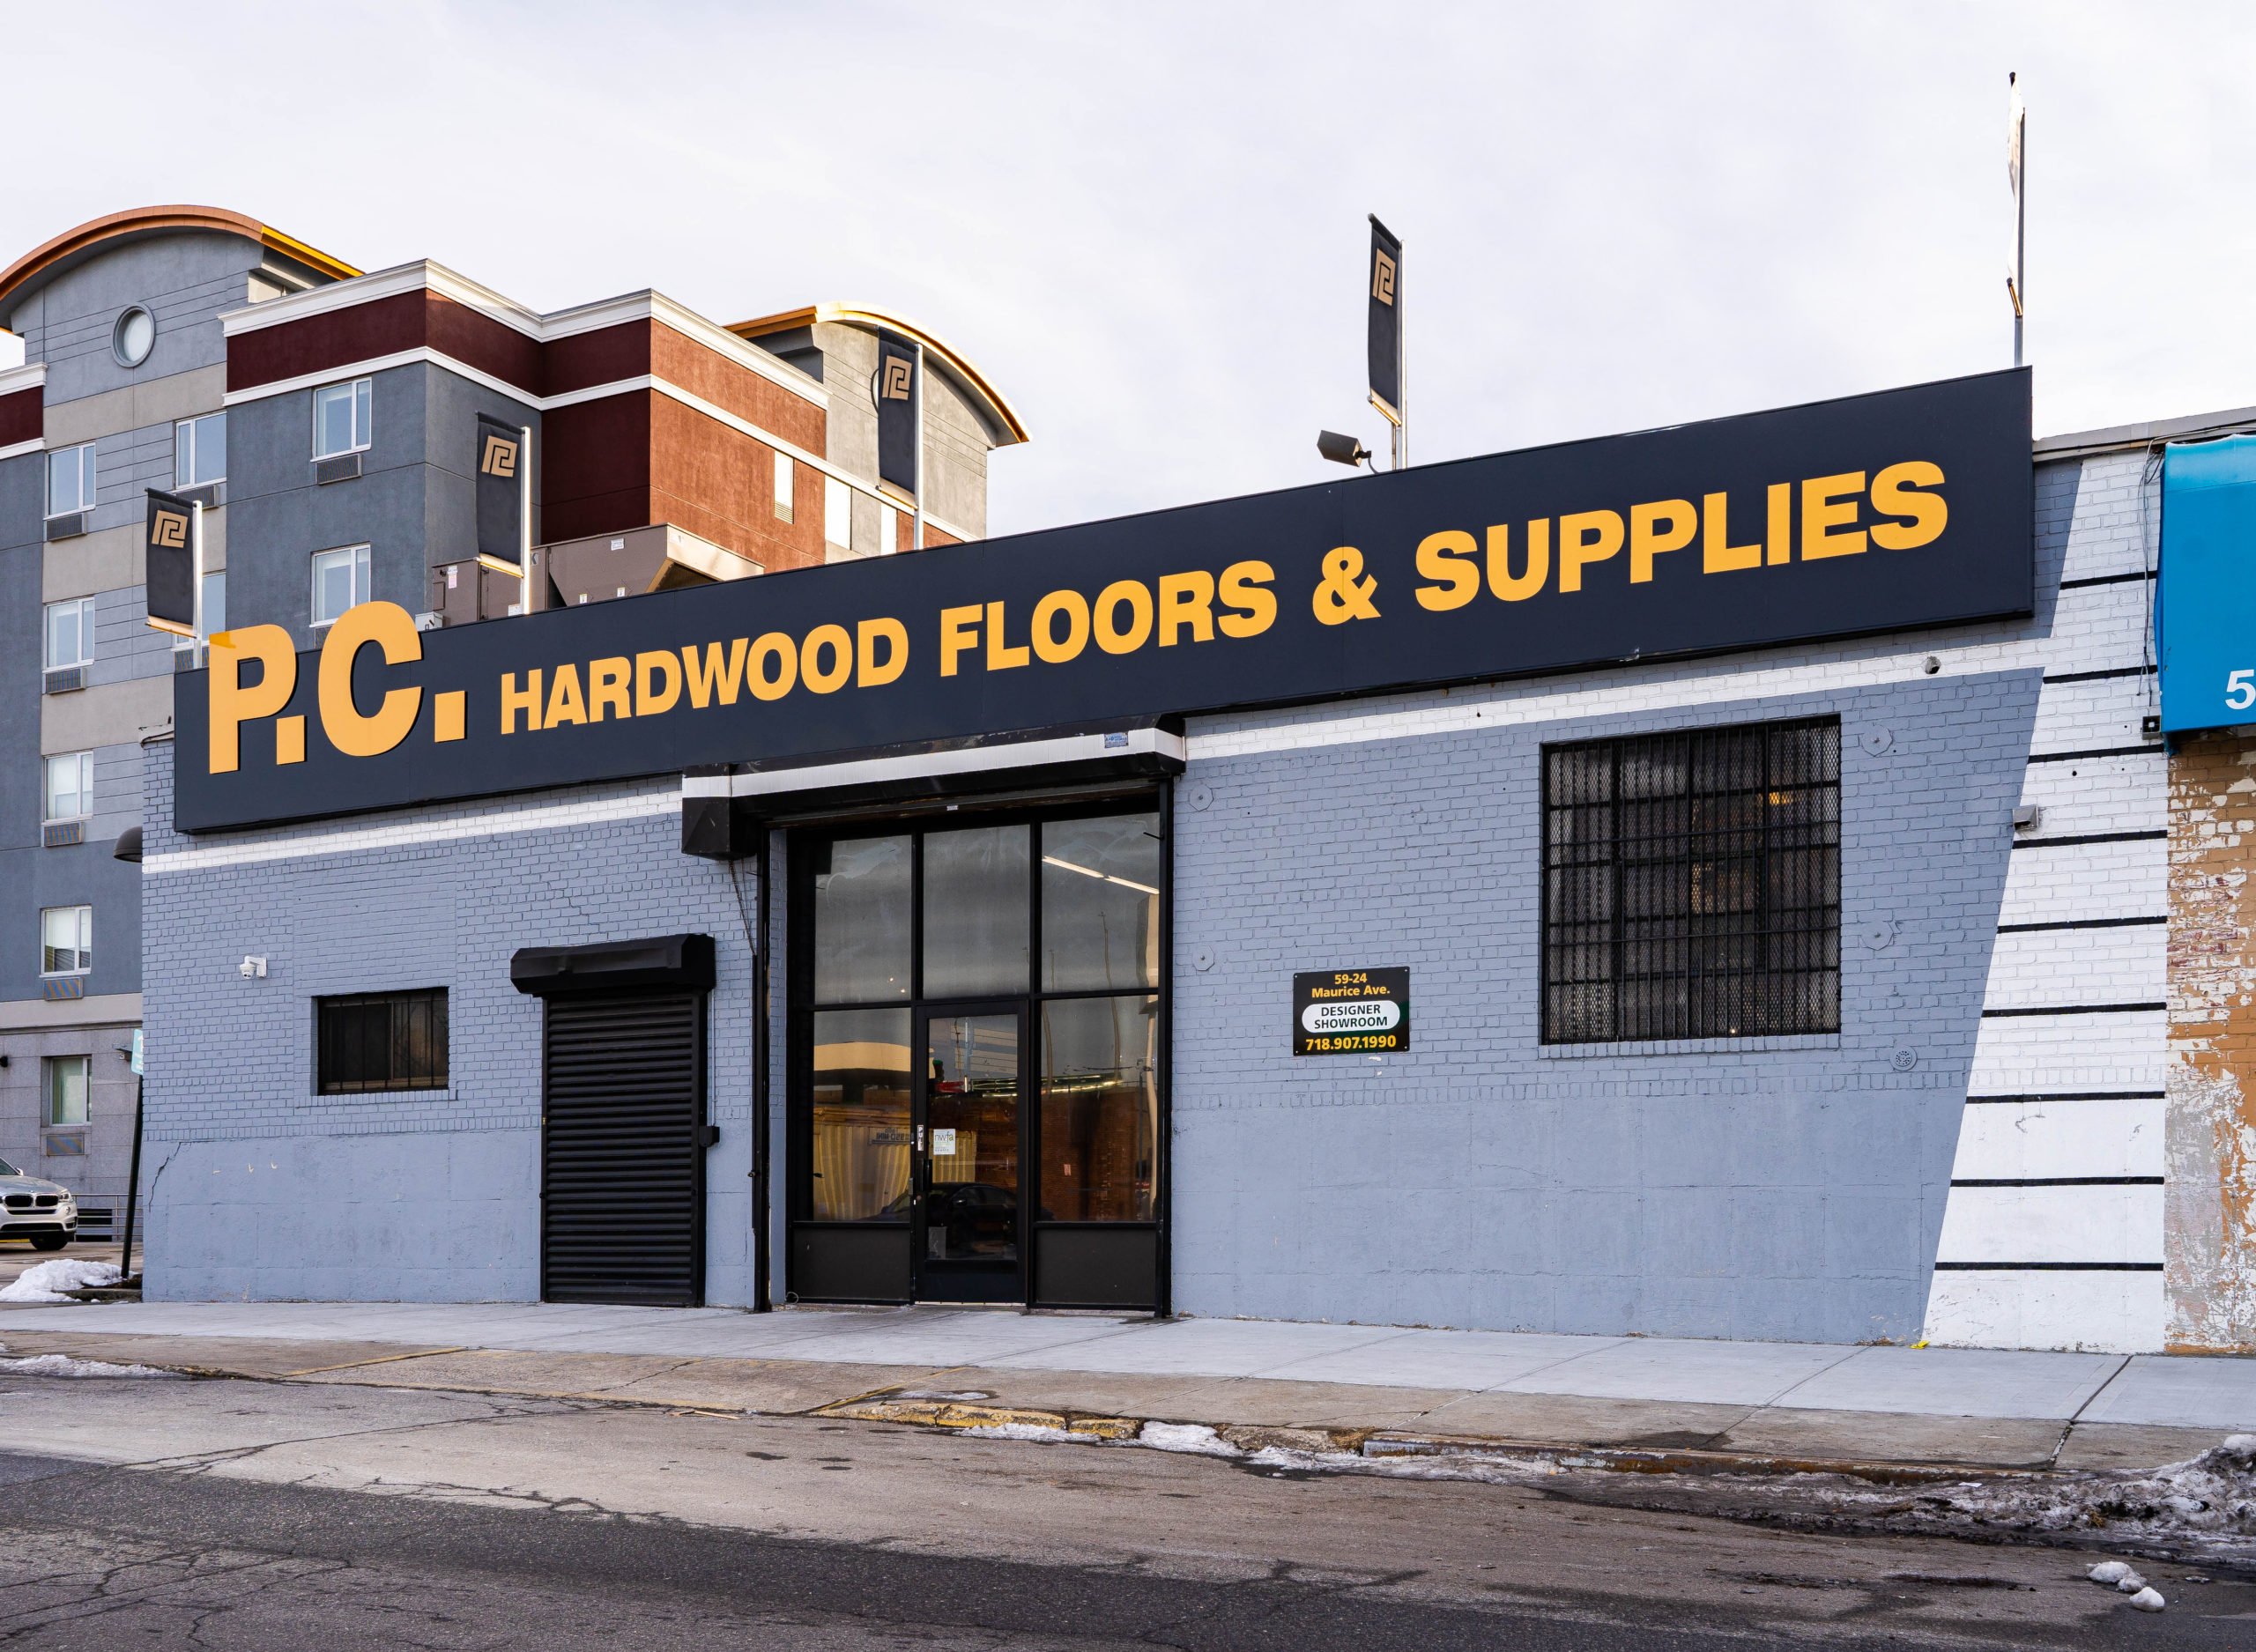 Maspeth Ny Hardwood Flooring Supplier, Pc Hardwood Floors